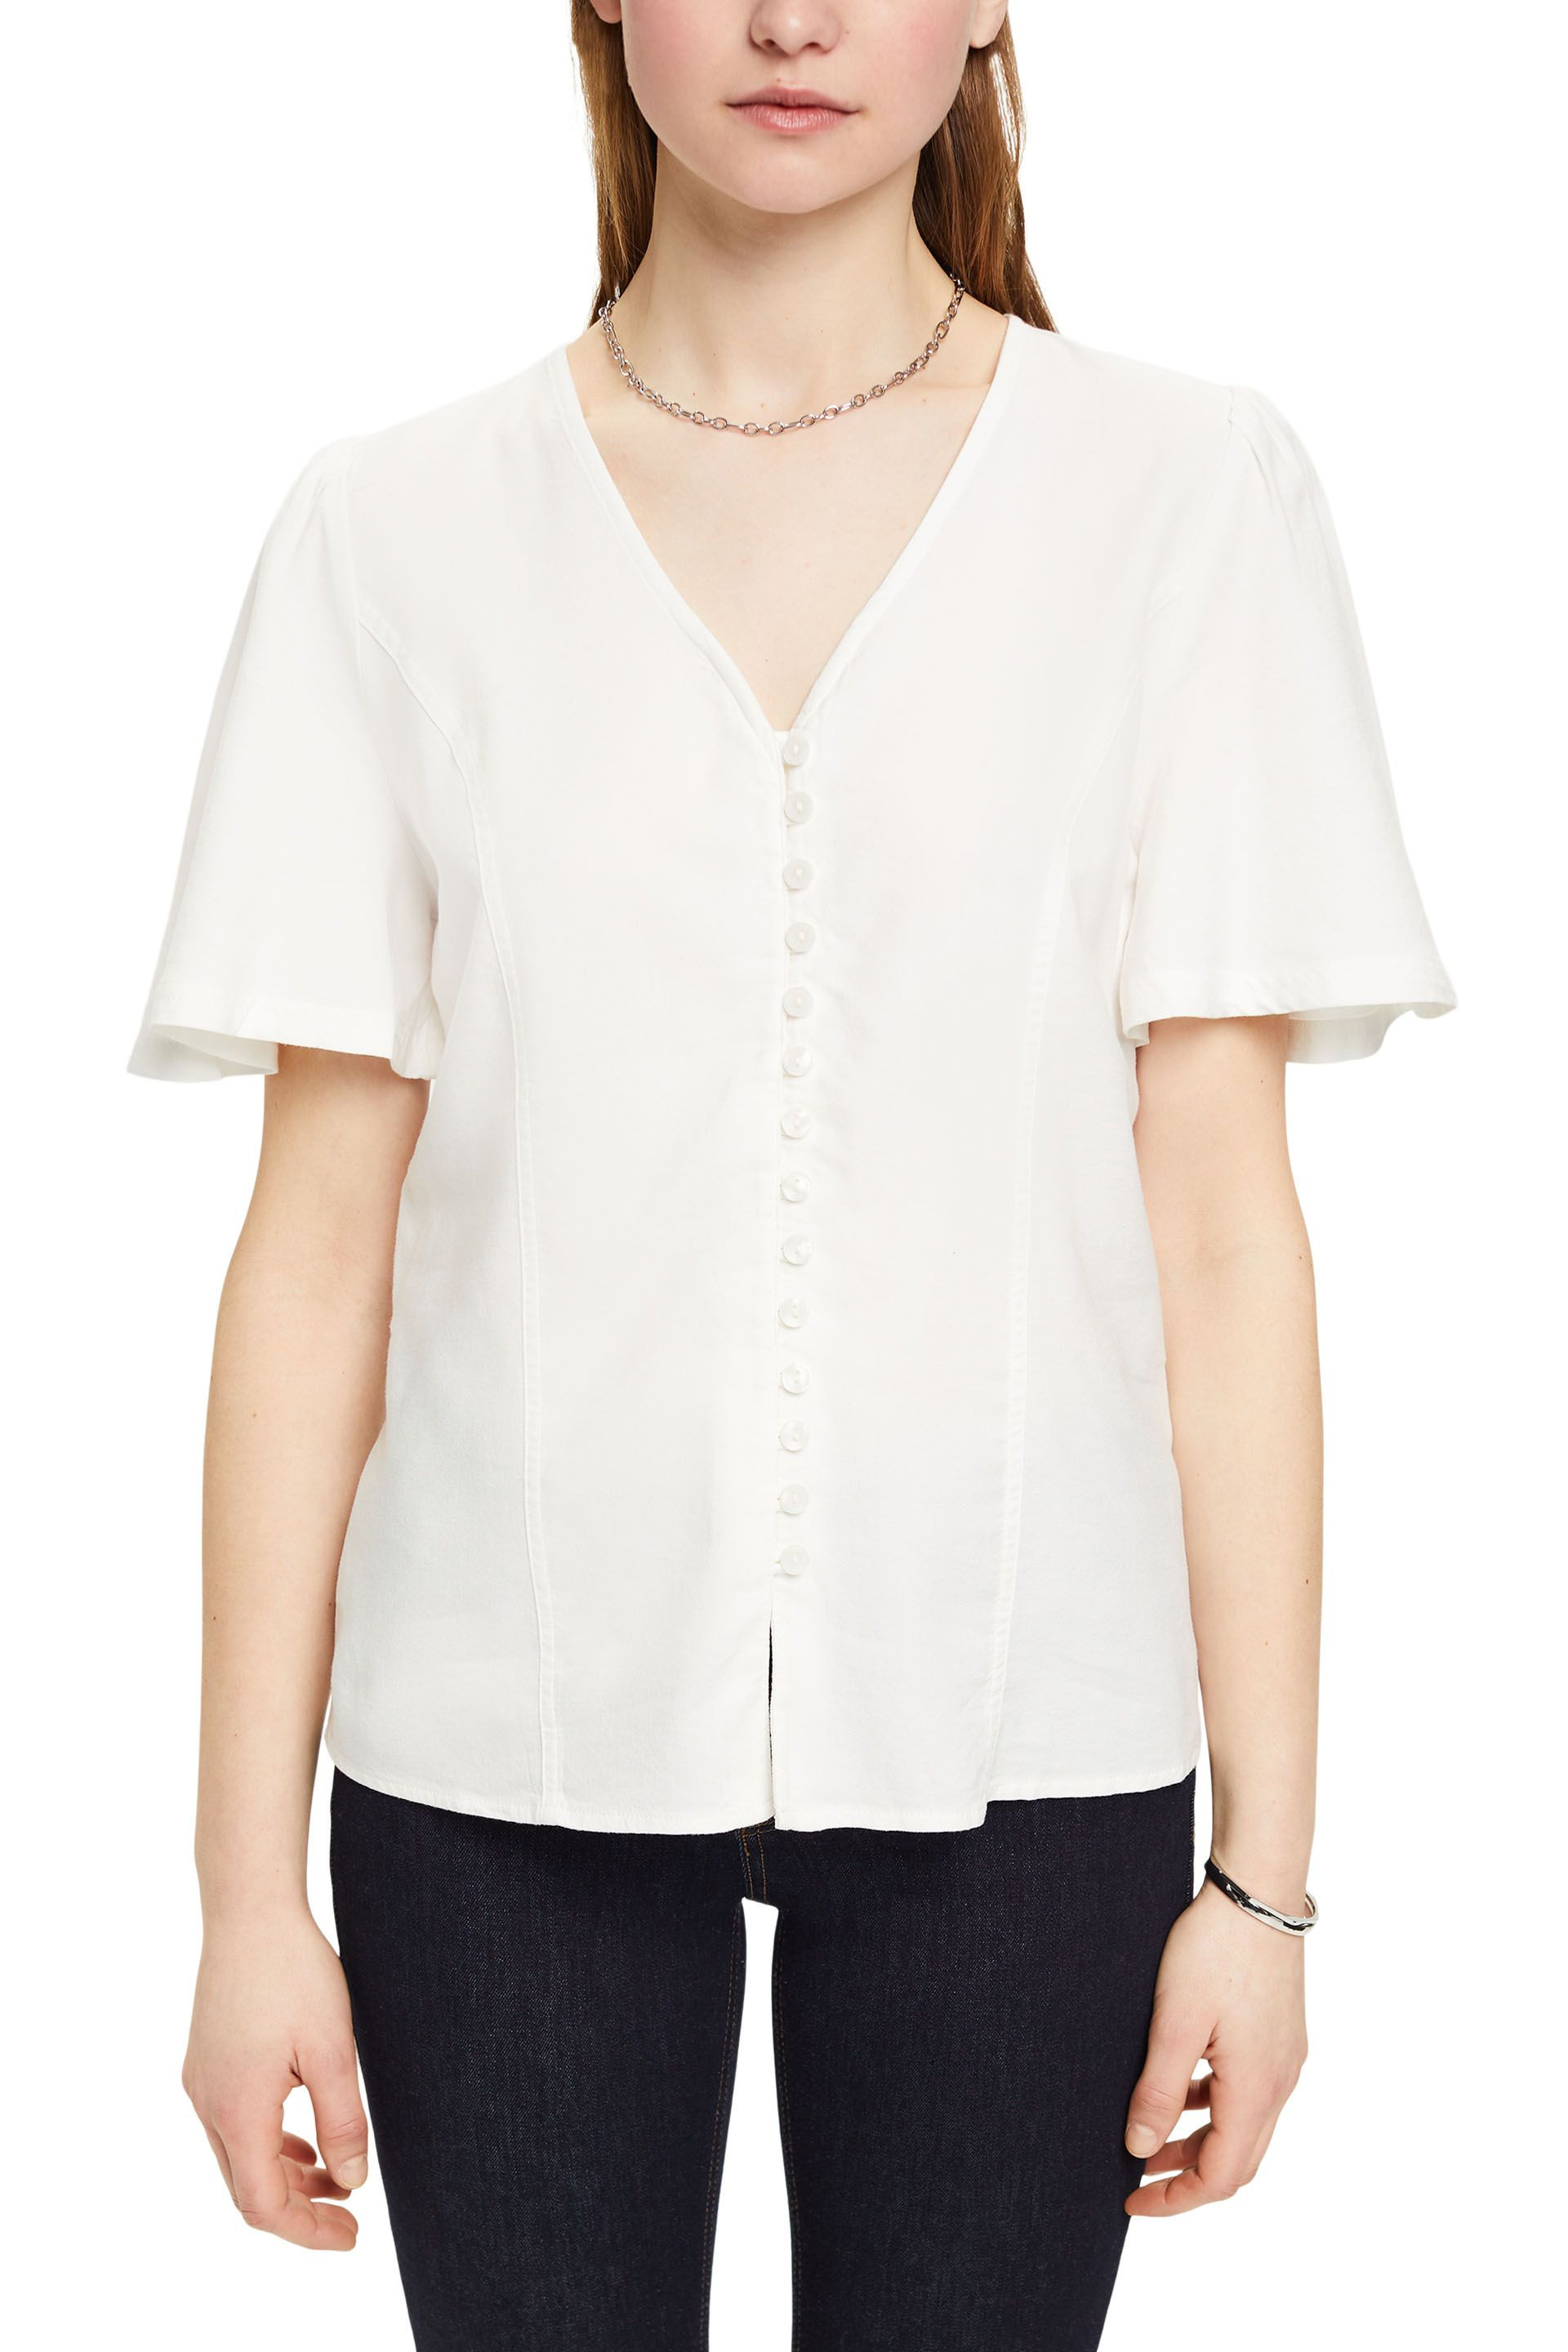 Esprit - V-neck blouse, White, large image number 1